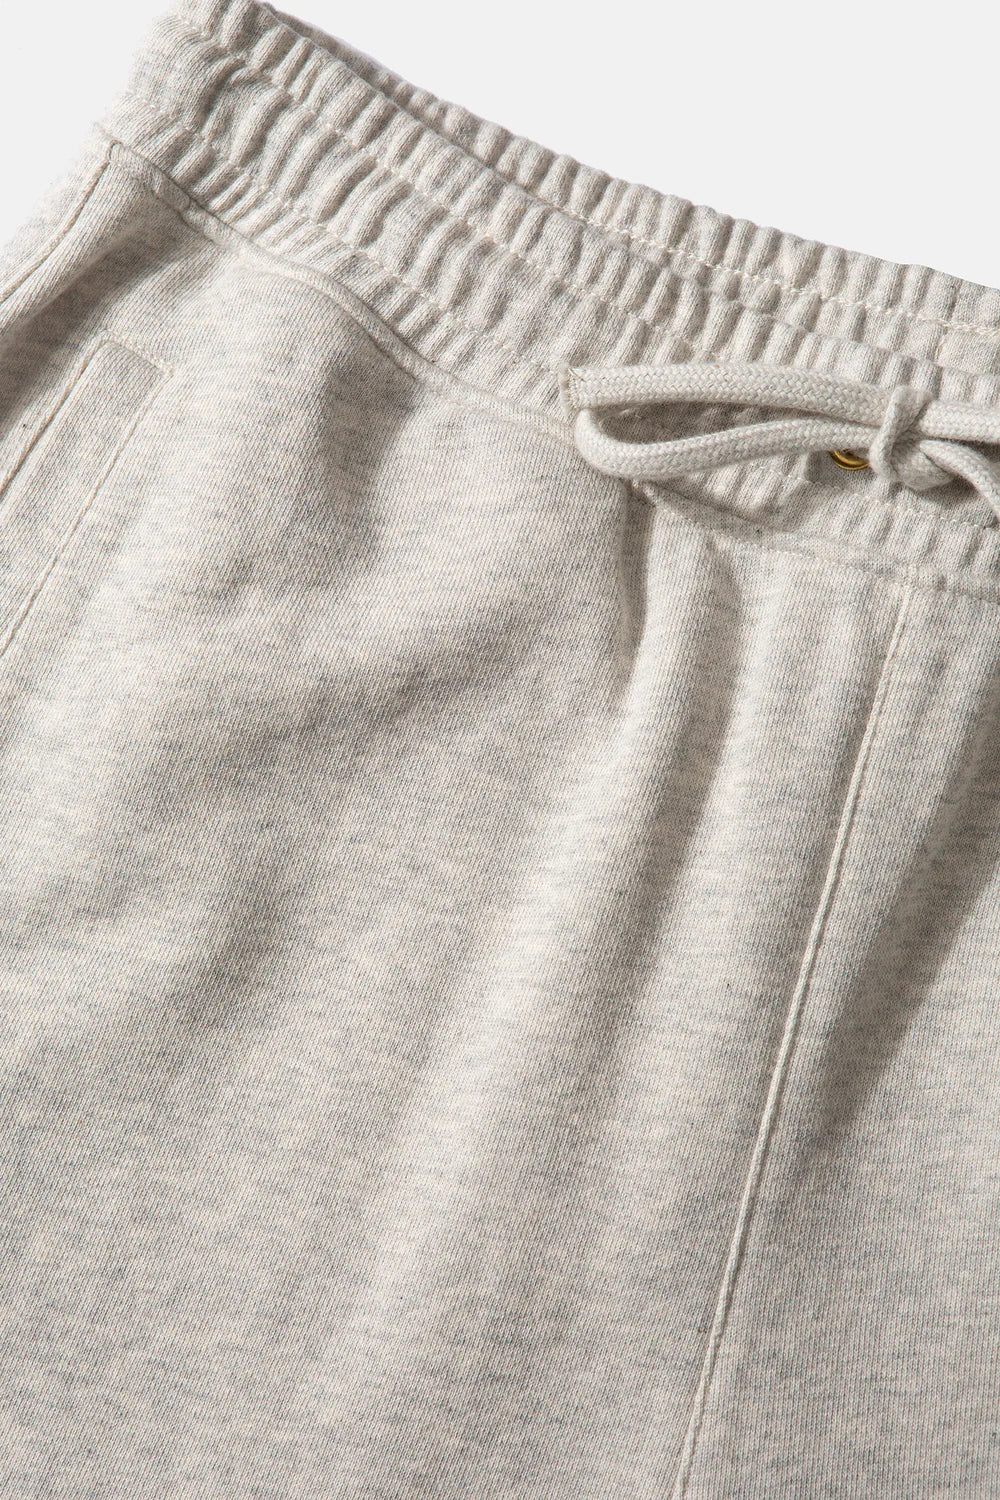 Edmmond Studios Key Sweatpants - Plain Grey